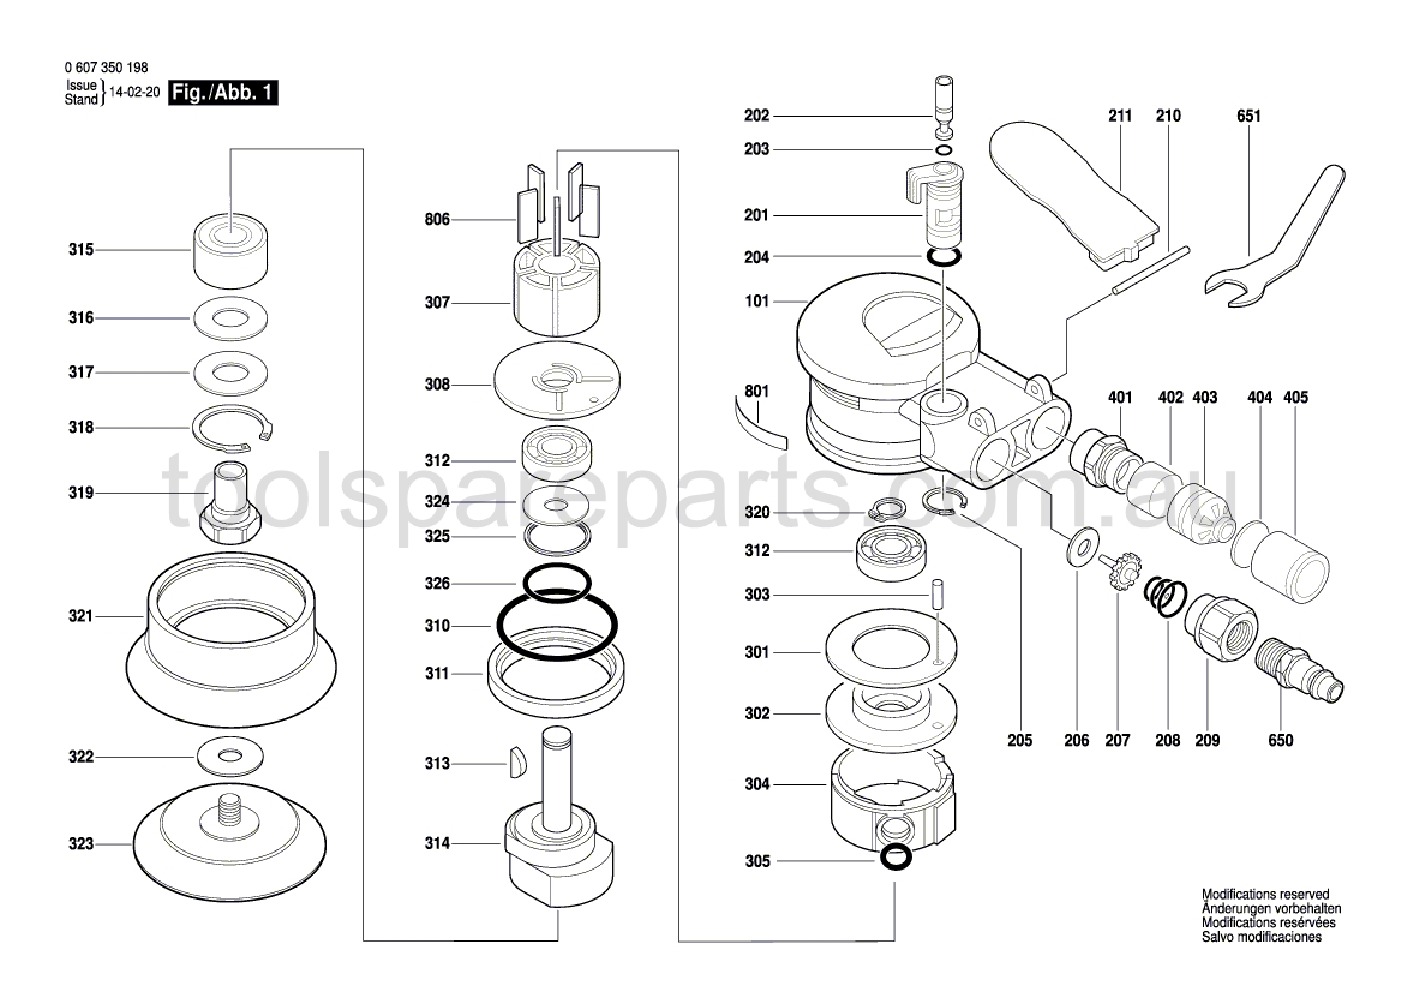 Bosch DEX 80 0607350198  Diagram 1